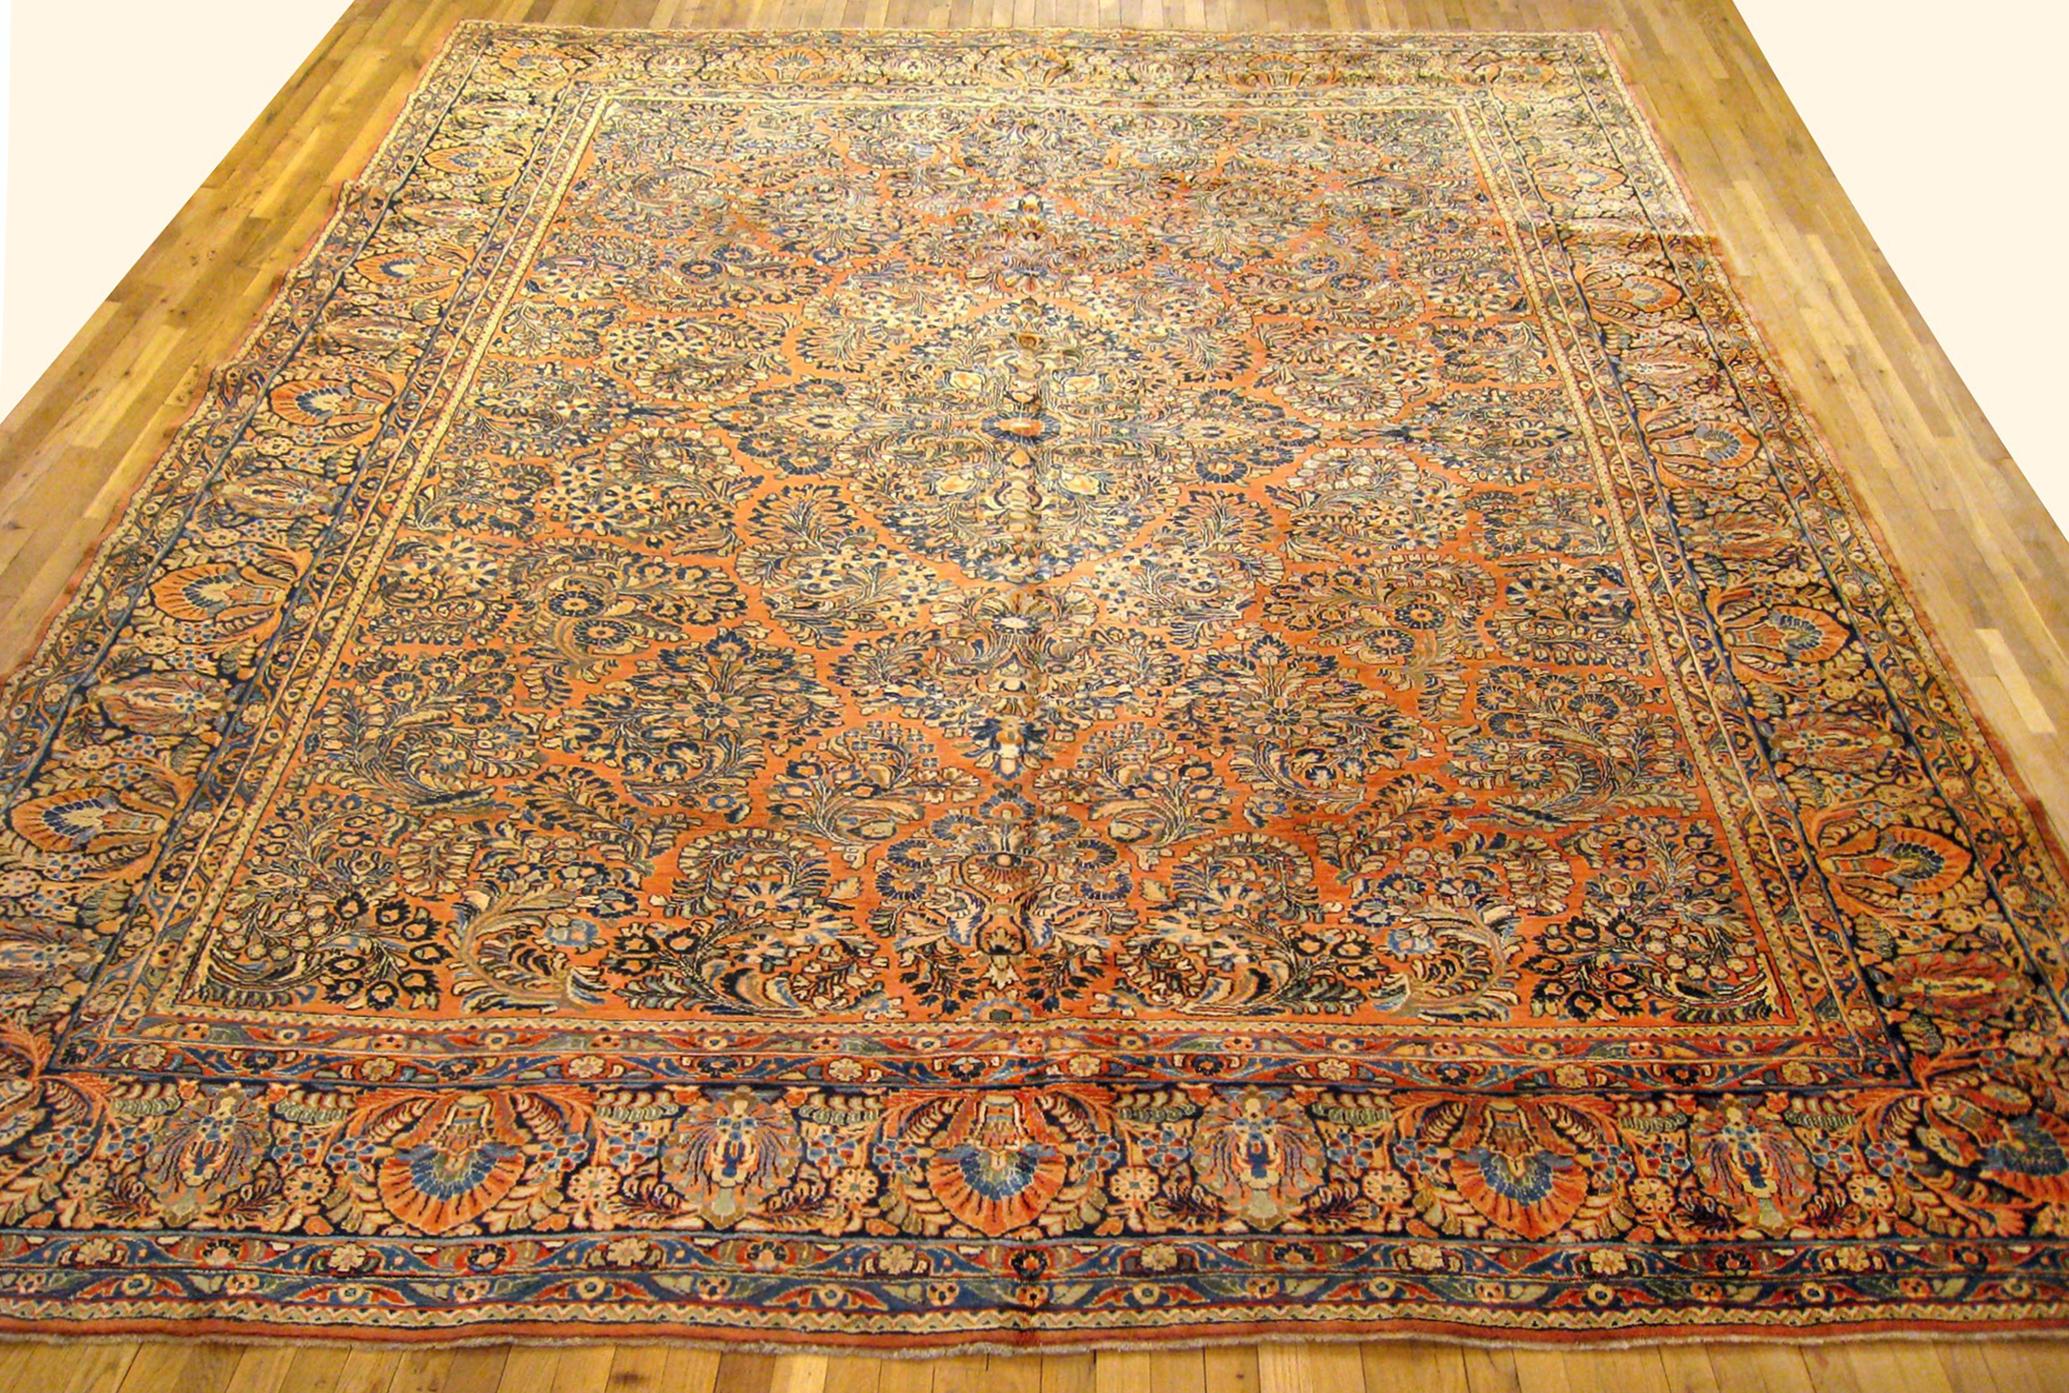 Antique Persian Sarouk Oriental Rug, circa 1910, Room size

An antique Persian Sarouk oriental rug, size 13'9